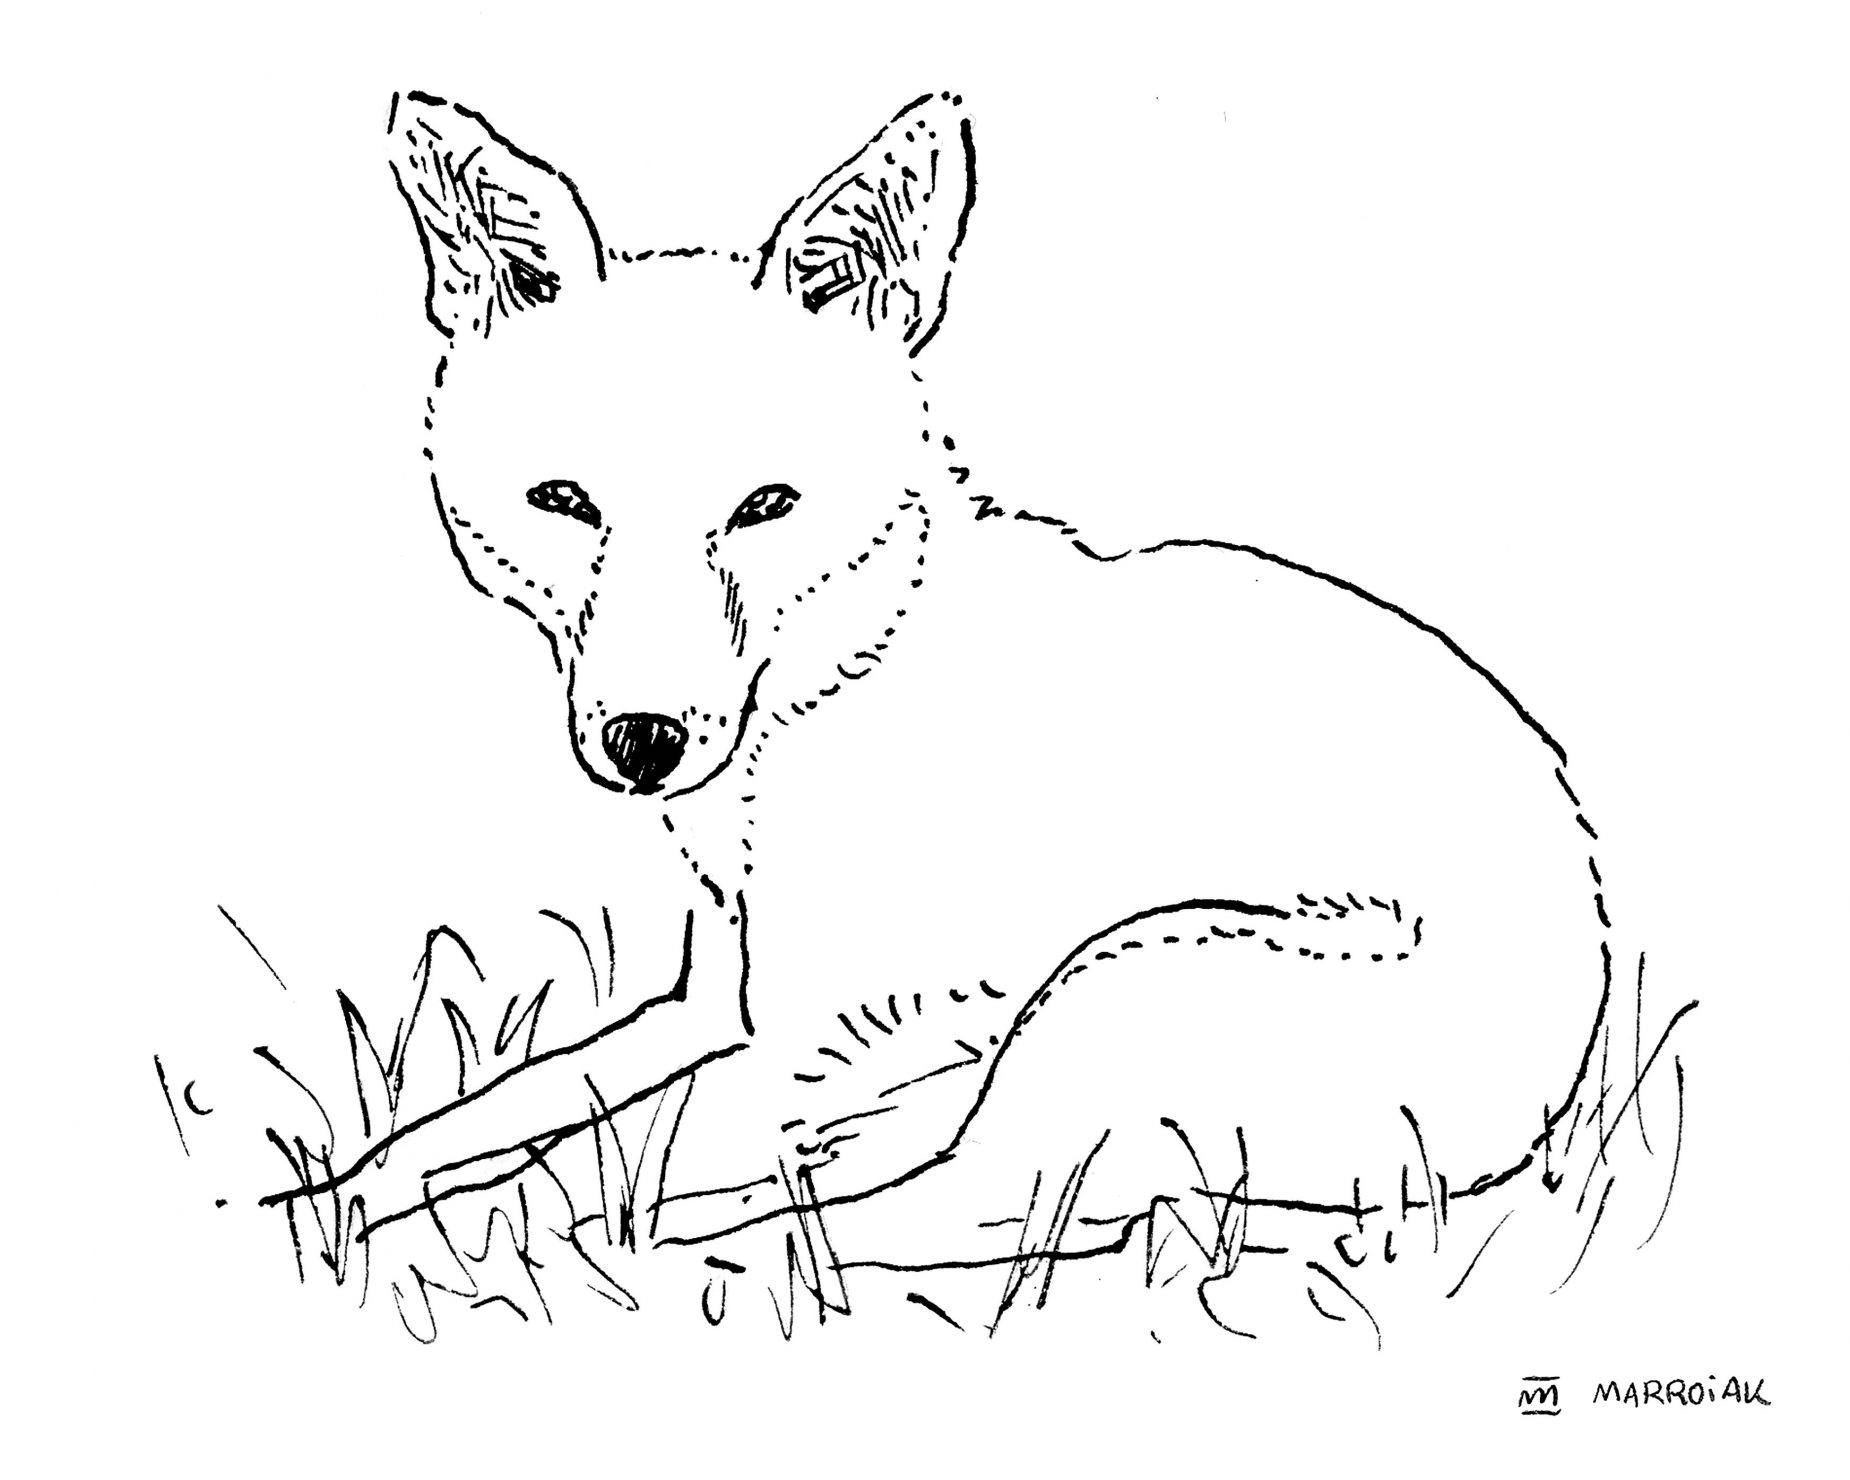 Dibujo zorro común (vulpes vulpes - rabosa) en blanco y negro. Ilustraciones de animales